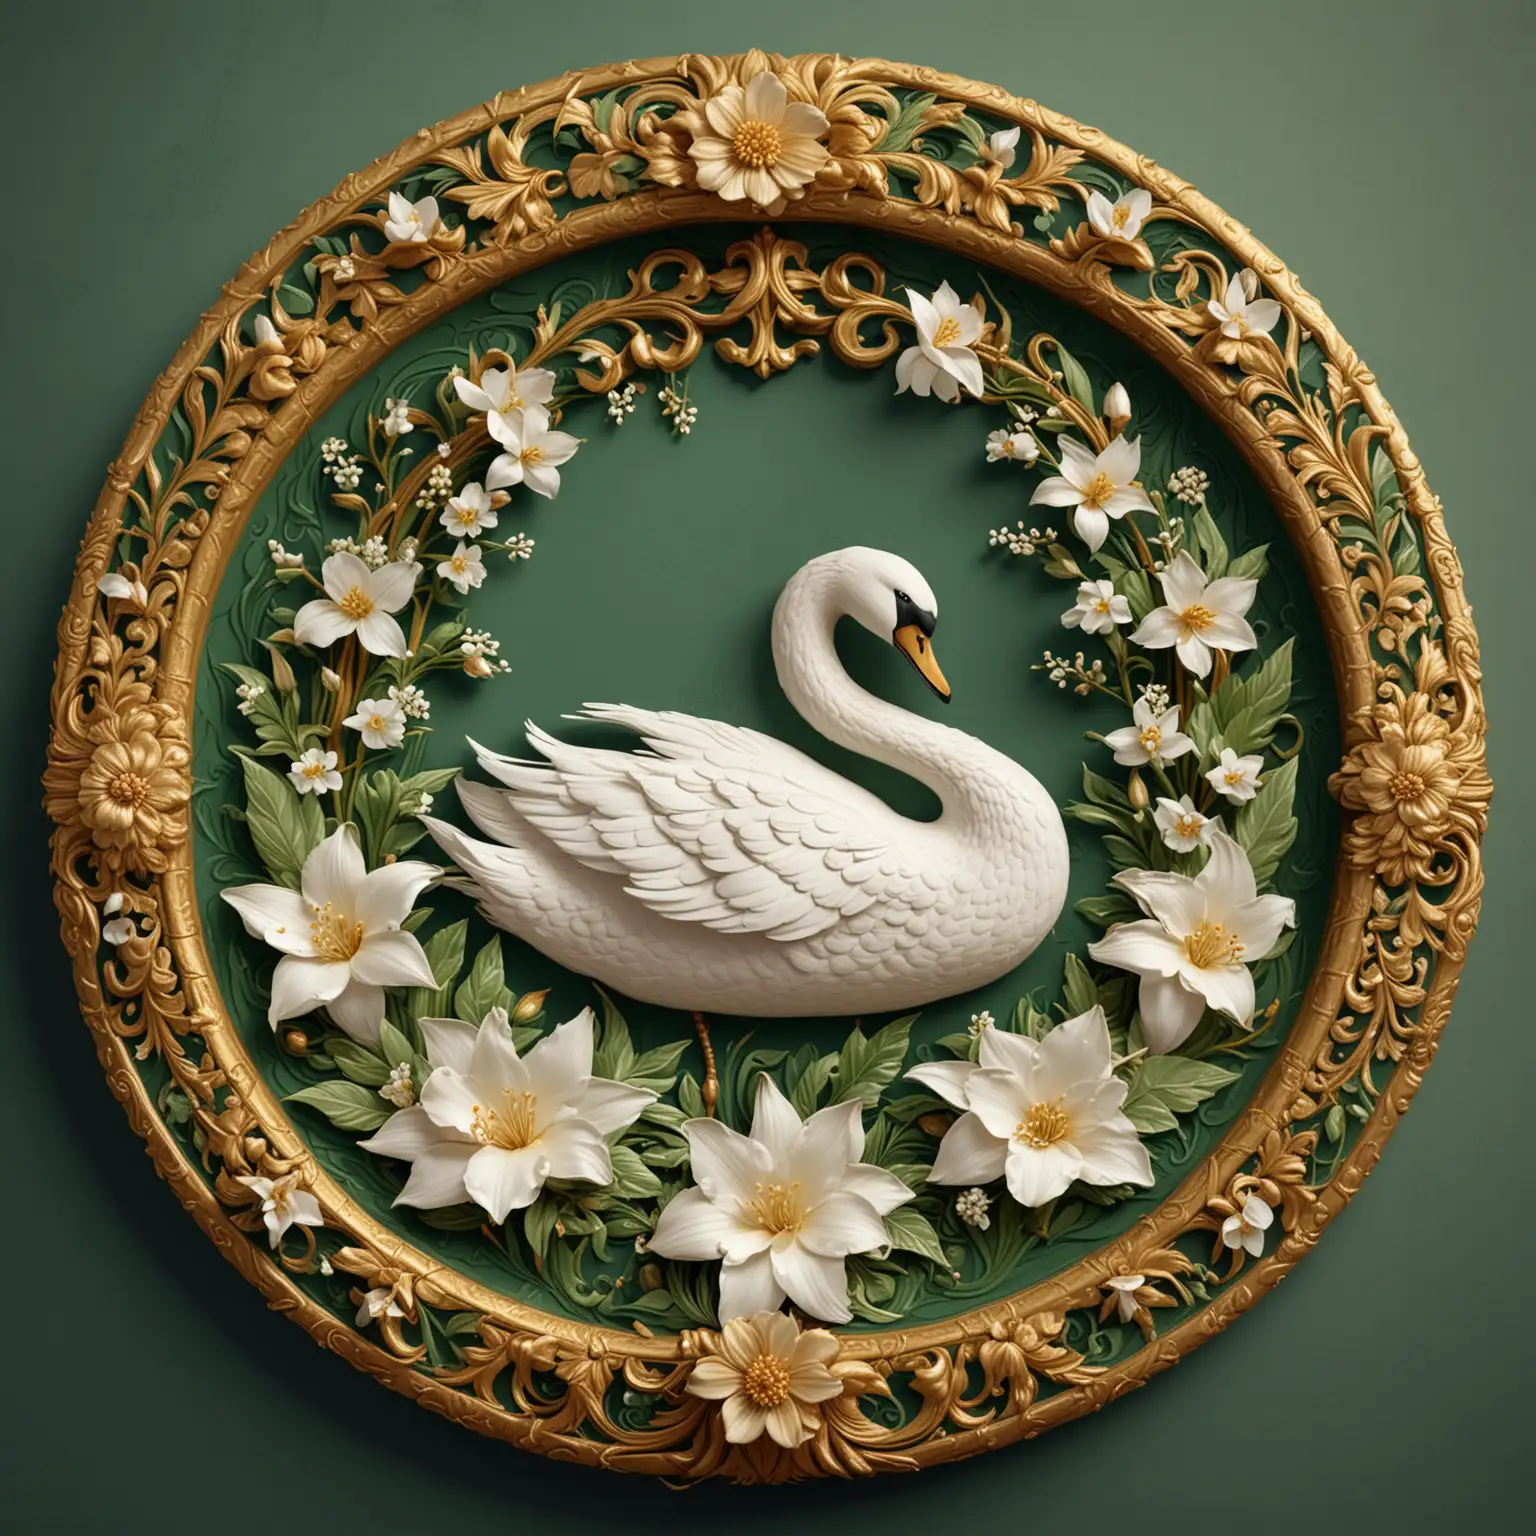 logo kuno berbentuk lingkaran berwarna hijau dikelilingi ukiran emas dan di tengah terdapat sebuah gambar angsa putih dan sekuntum bunga melati